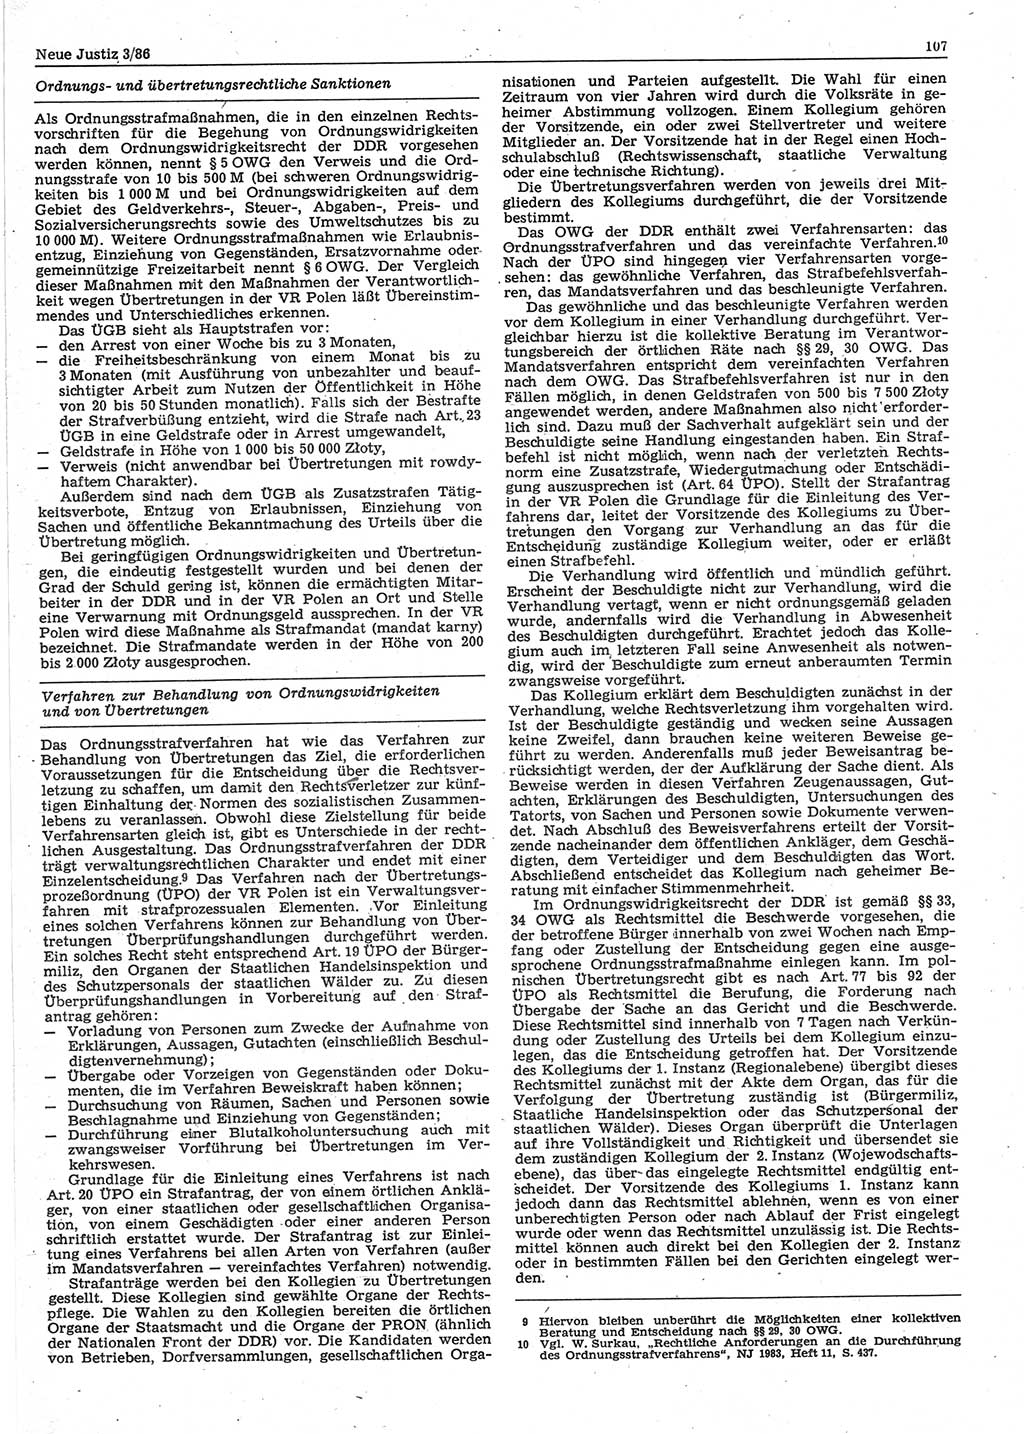 Neue Justiz (NJ), Zeitschrift für sozialistisches Recht und Gesetzlichkeit [Deutsche Demokratische Republik (DDR)], 40. Jahrgang 1986, Seite 107 (NJ DDR 1986, S. 107)